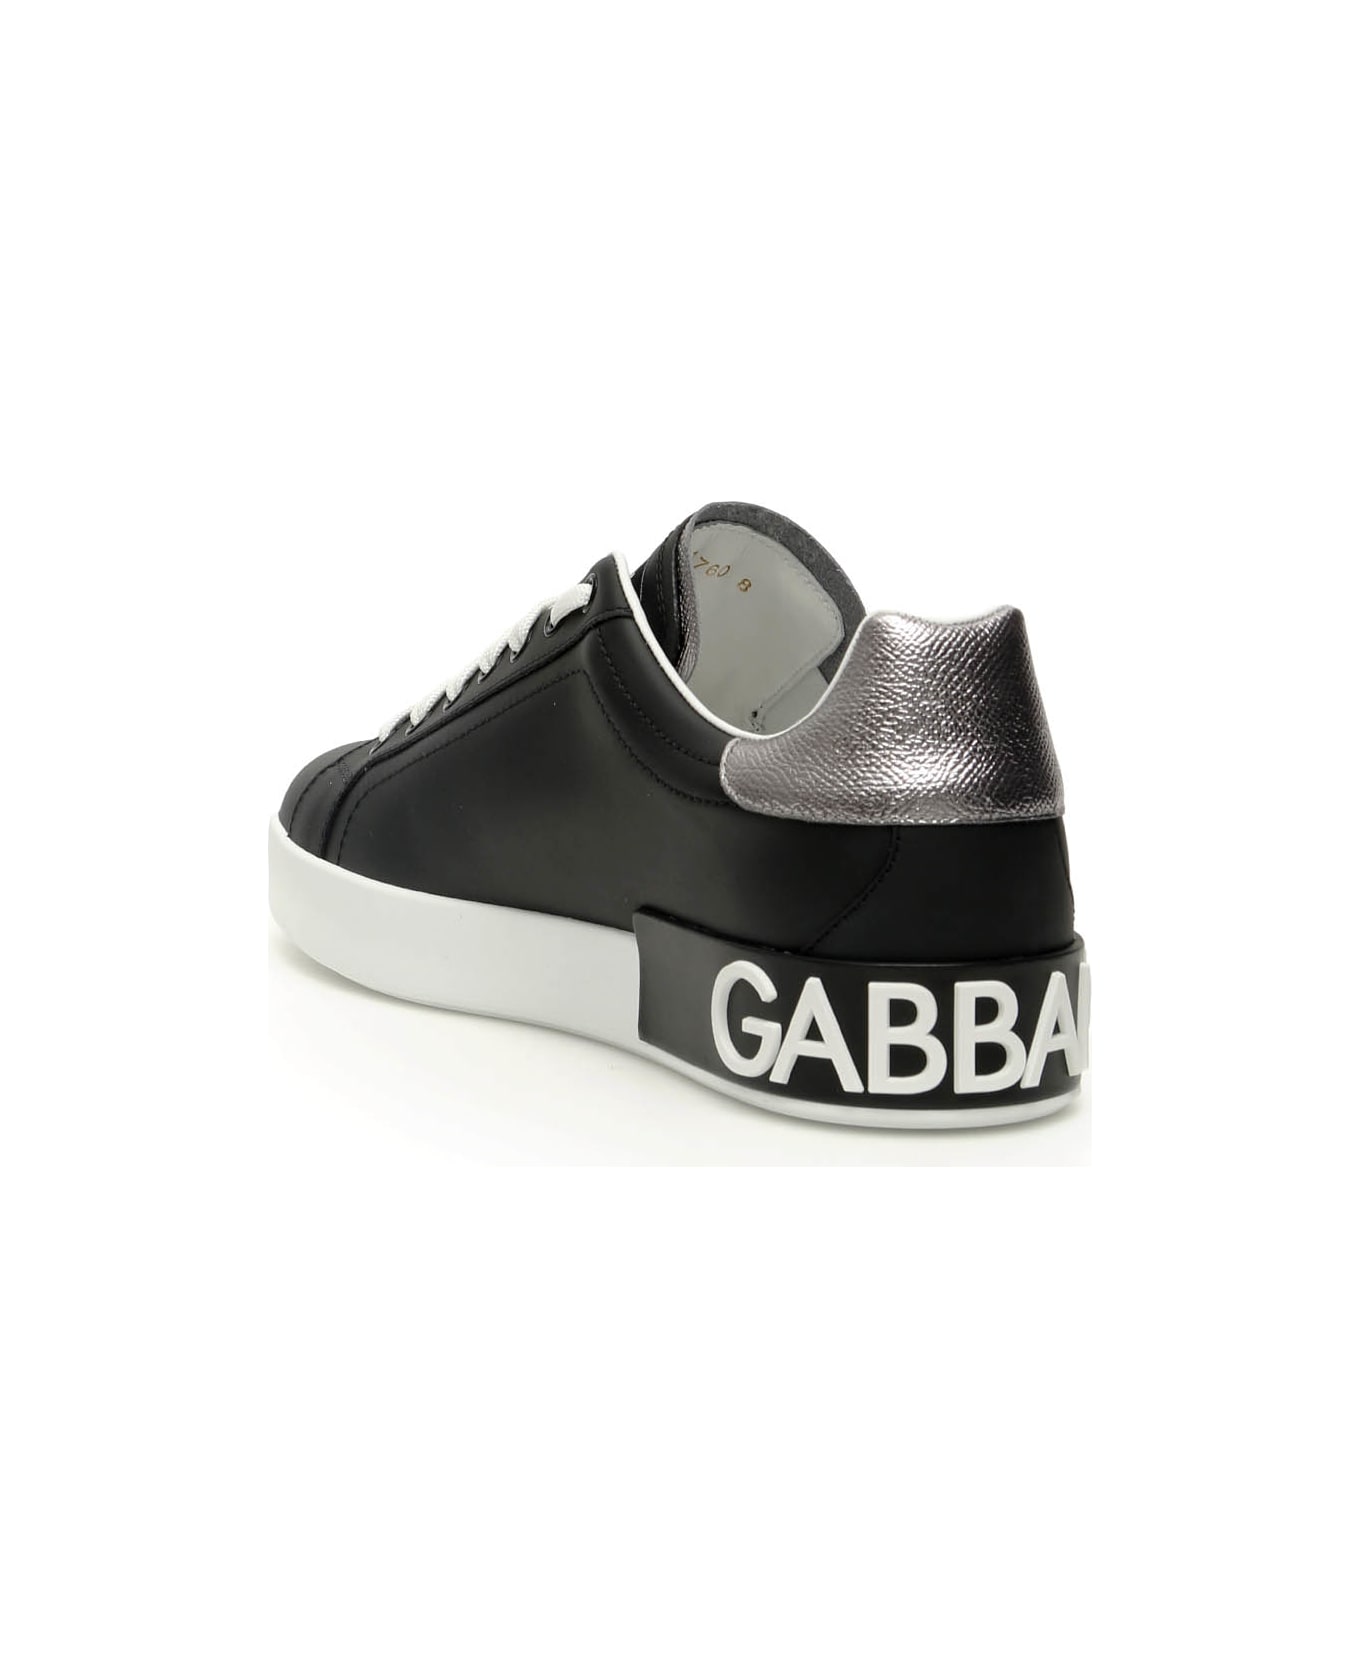 Dolce & Gabbana Portofino Leather Sneakers - NERO ARGENTO